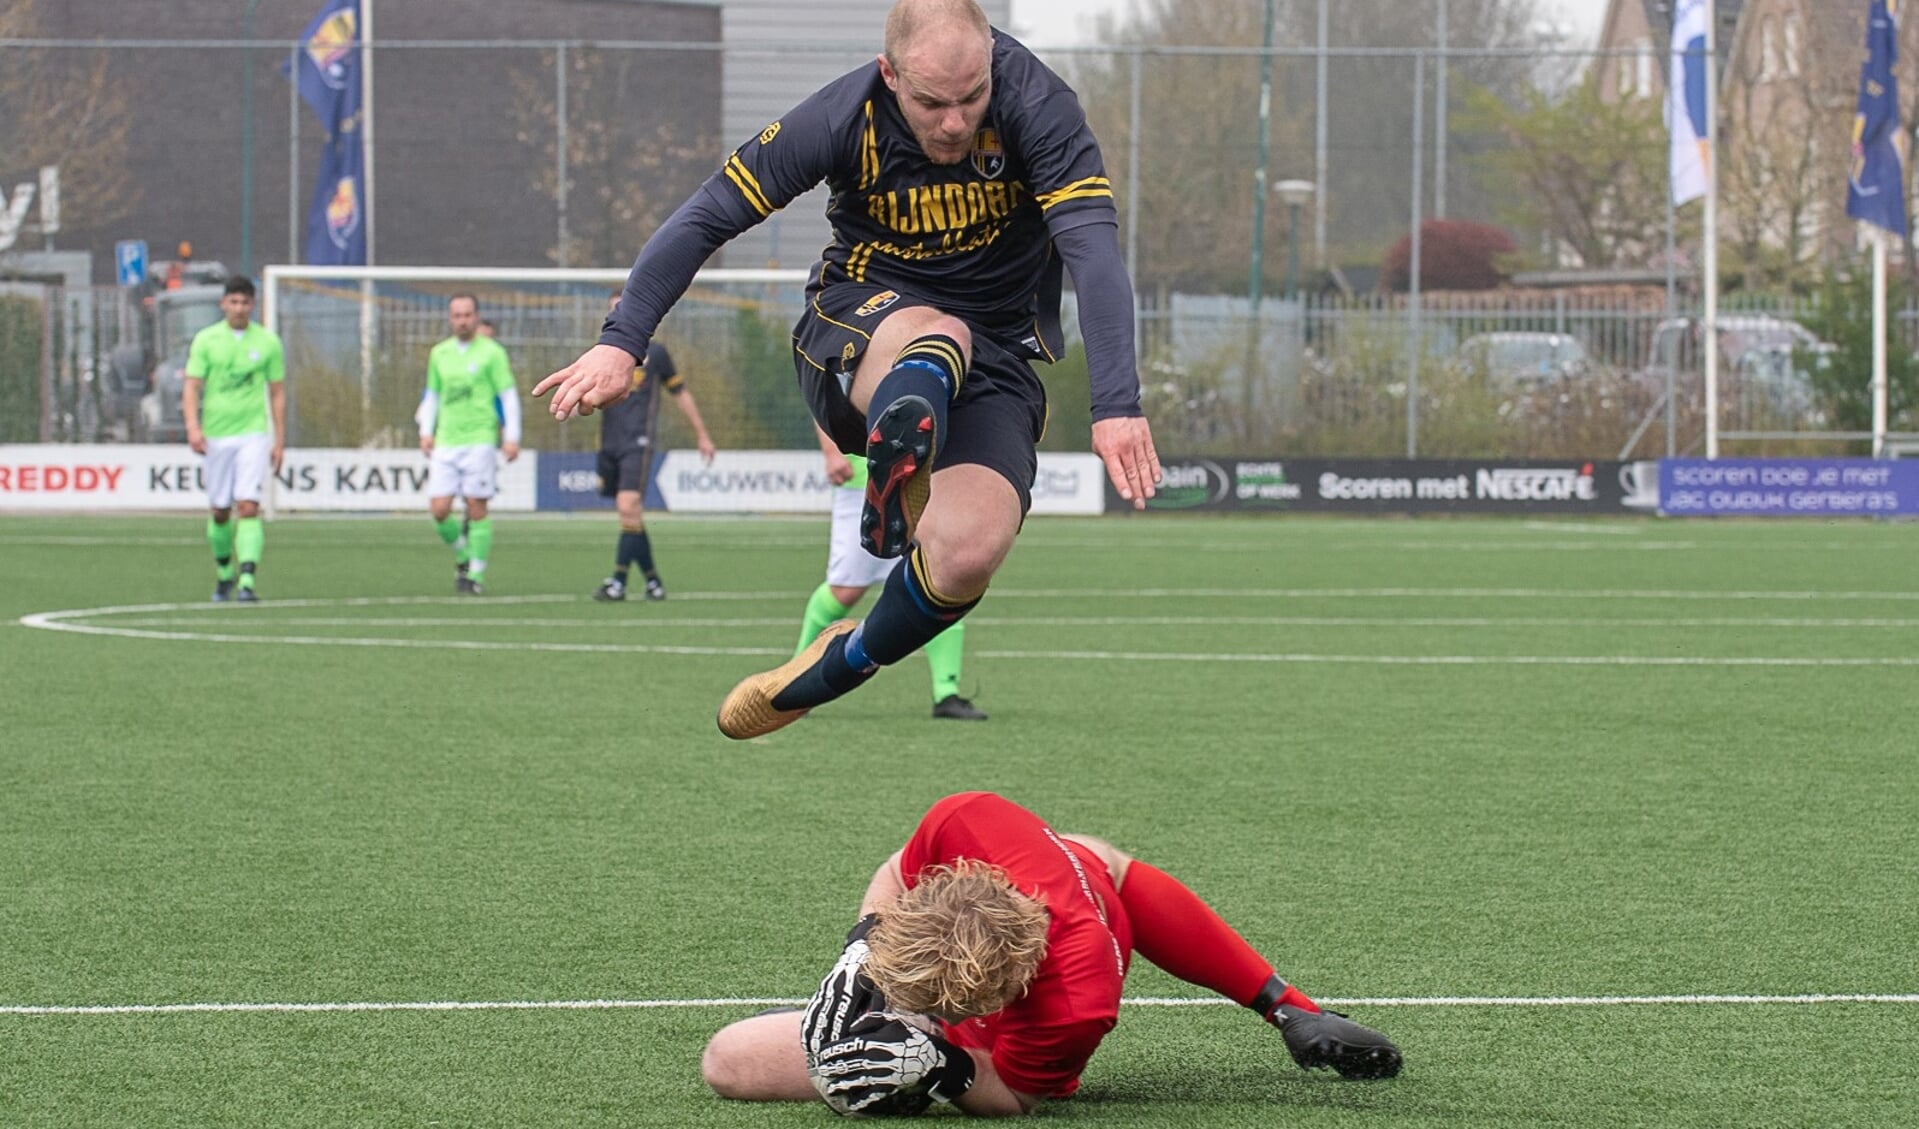 Bob den Hollander, met twee doelpunten man of the match, was hier ook dichtbij een treffer. | Foto lichtenbeldfoto.nl